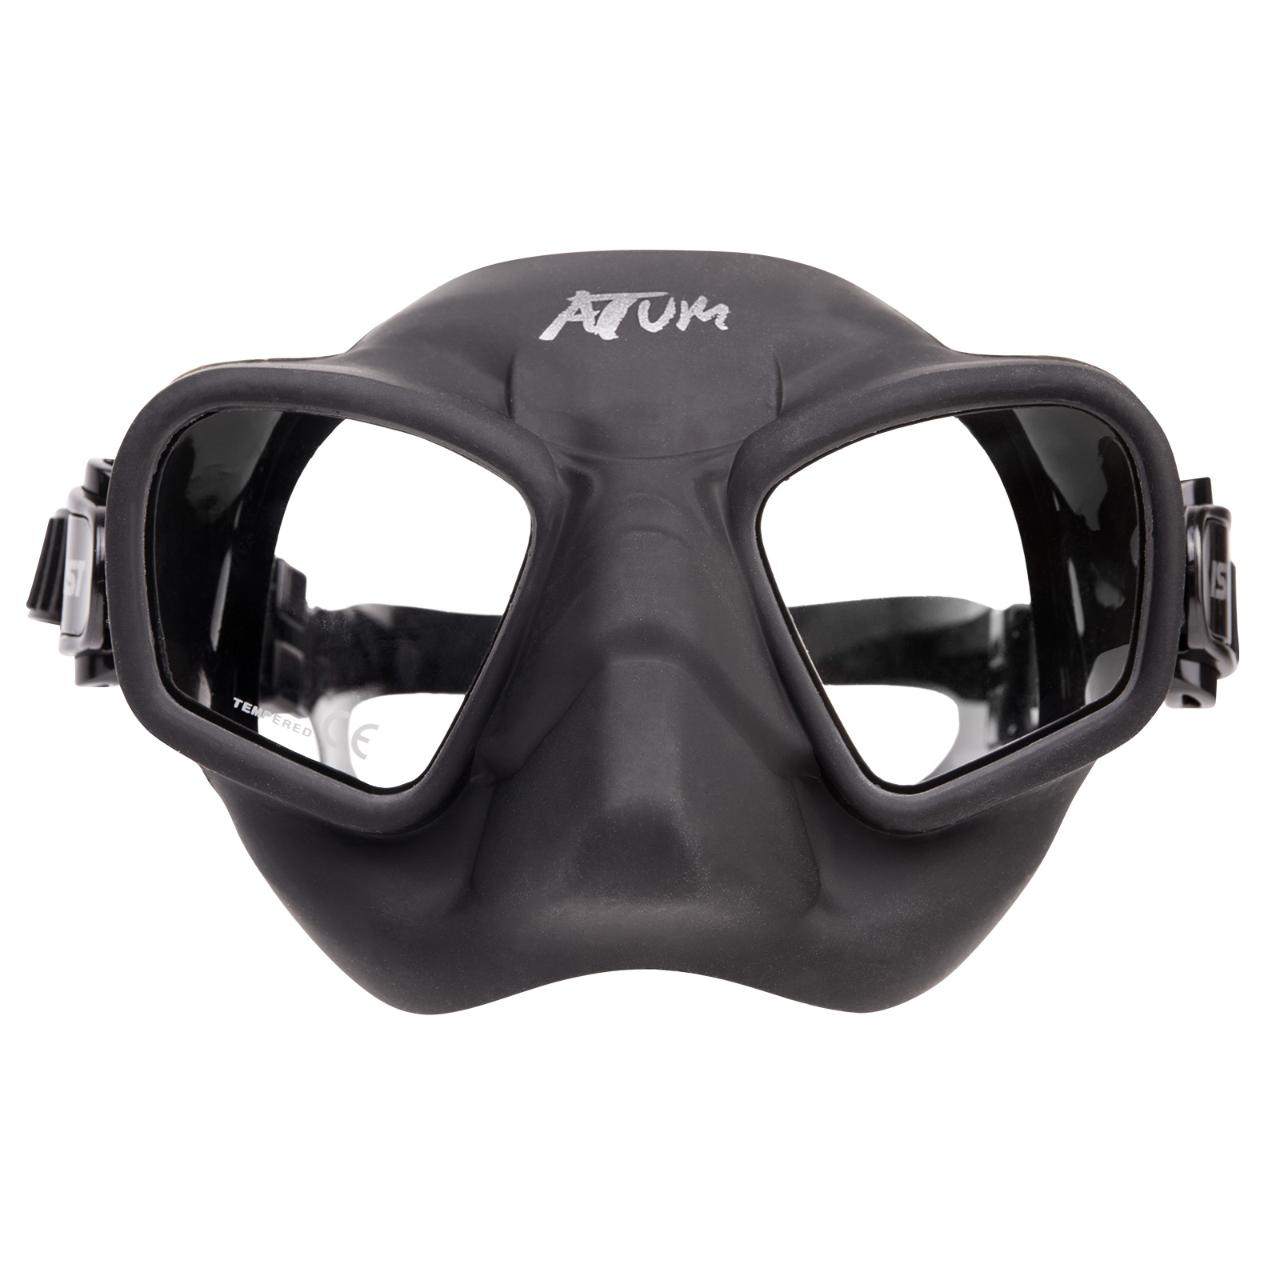 IST Atum mask